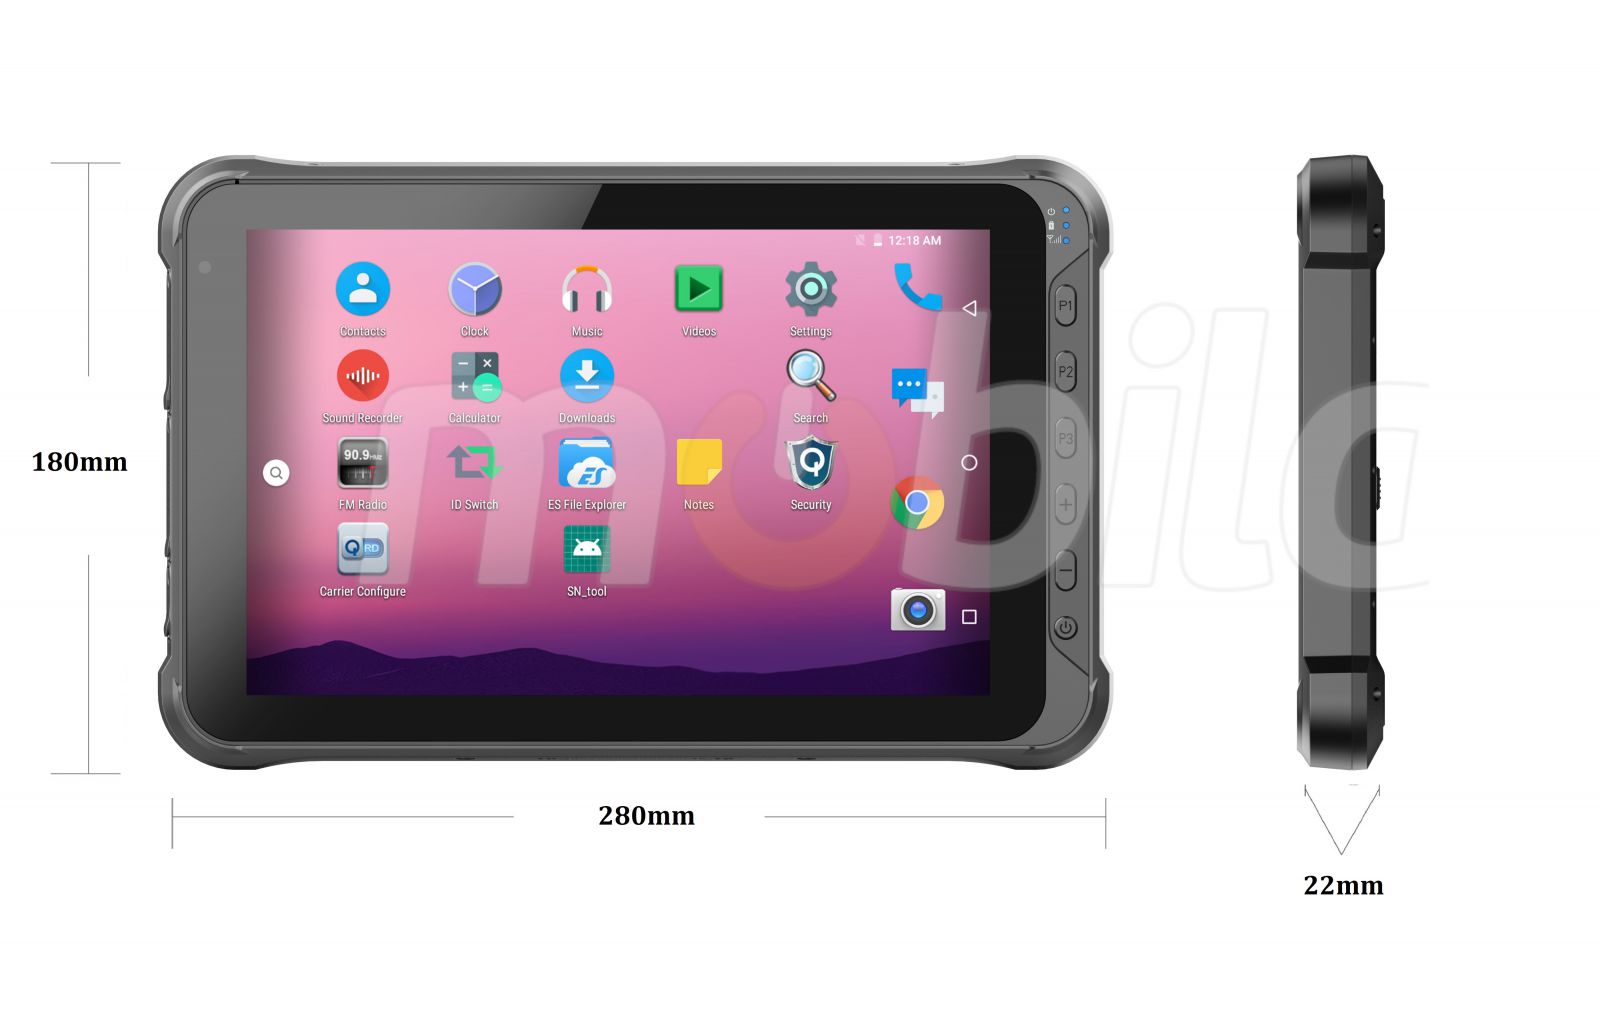 Dustproof 10 inch tablet with 1D Honeywell barcode reader, IP65 + MIL-STD-810G standards, 4GB RAM, 64GB ROM, BT4.1 - Emdoor Q15 v.6 